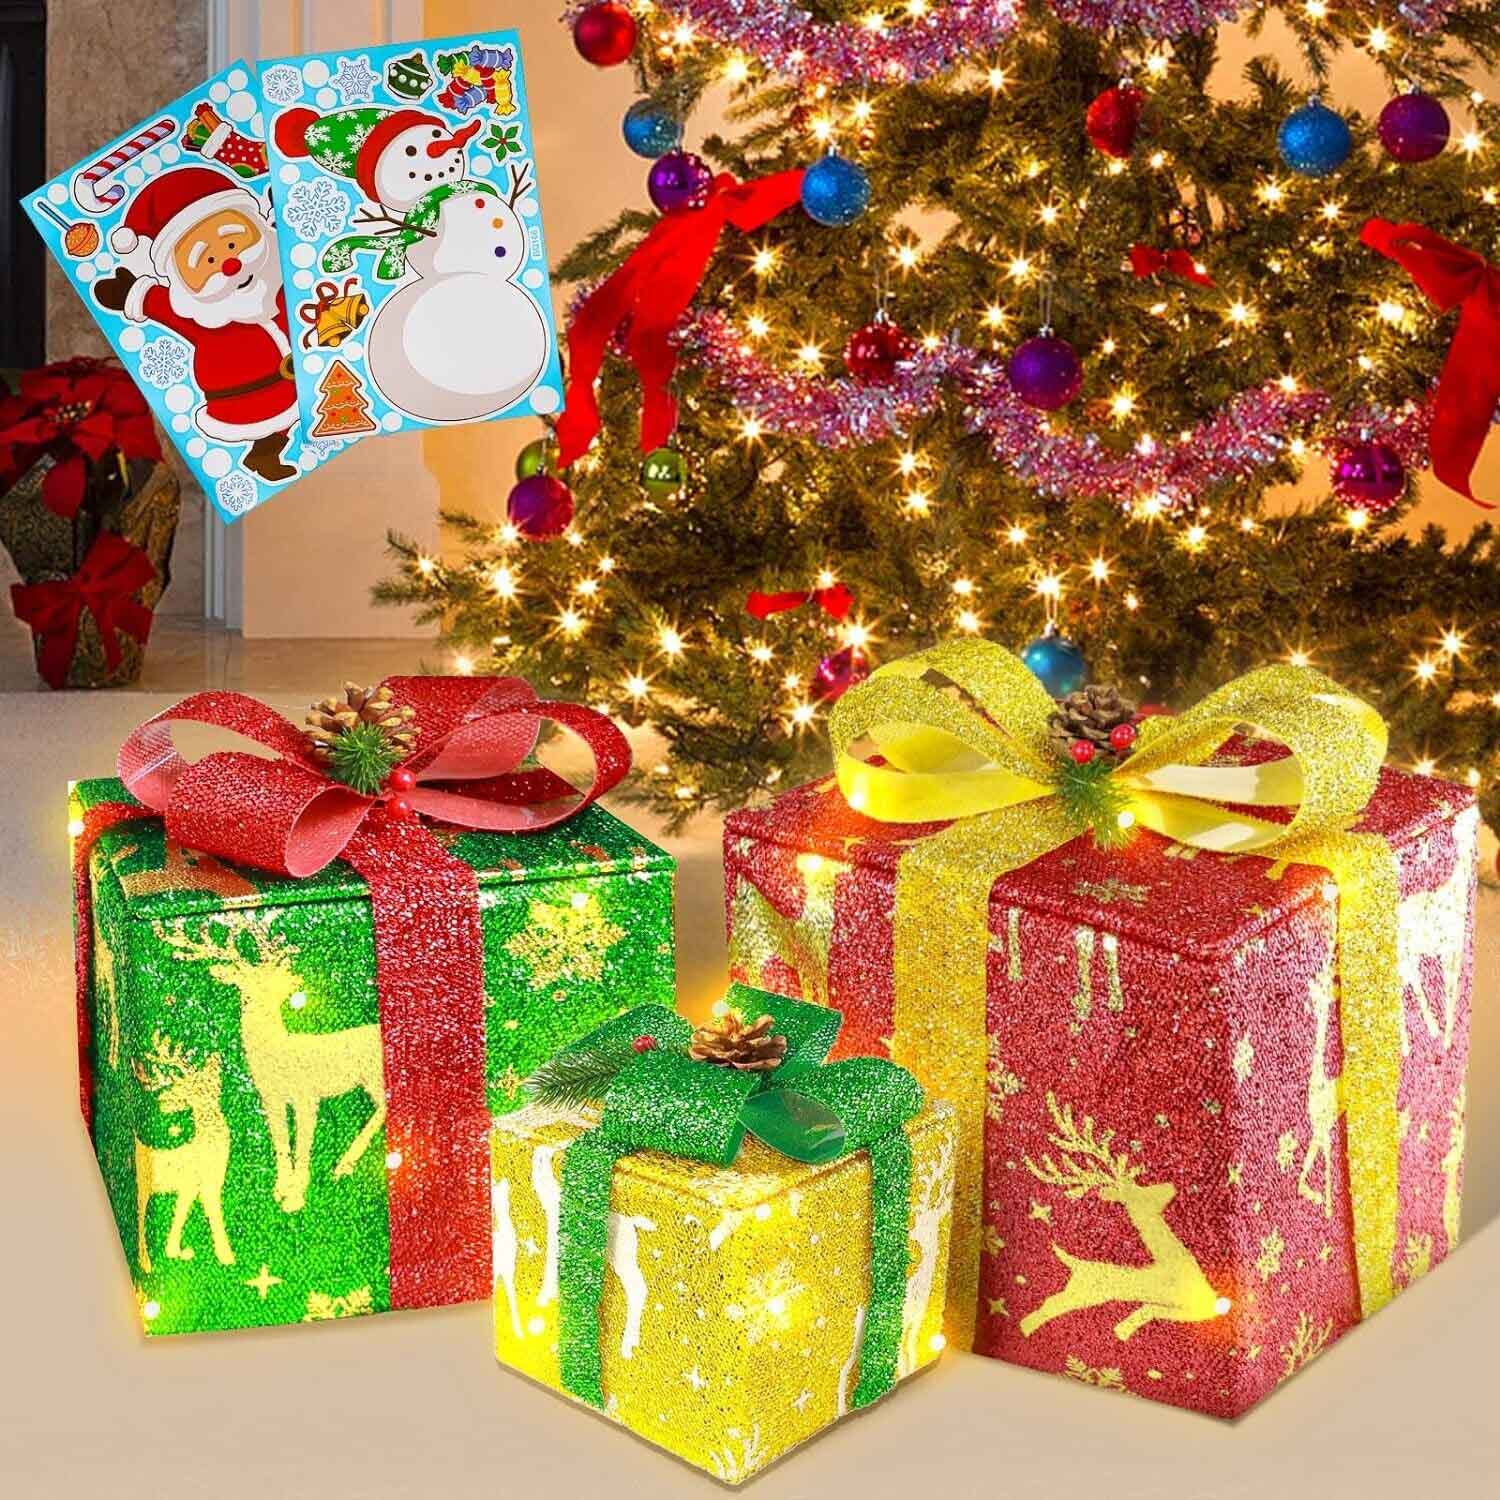 クリスマスの装飾ライト付きギフトボックスは、クリスマスのシーズンにお部屋や屋外を飾るための美しい飾りアイテムです。これらのギフトボックスは、クリスマスツリーの周りに配置する、家庭や庭園の装飾に最適なアクセントです。さらに、内部に組み込まれたライトが幻想的な雰囲気を醸し出し、特別な季節を祝福します。 主な特長: クリスマスデザイン: クリスマスの象徴であるギフトボックスのデザインは、シーズンの雰囲気を演出します。 内部ライト: ギフトボックス内に取り付けられたLEDライトは、柔らかい光を放ち、雰囲気を引き立てます。 屋内外使用: 耐候性があり、屋内と屋外の両方で使用できます。 簡単な設置: ギフトボックスは組み立てや設置が簡単で、取り外し可能です。 多彩なデザイン: サイズや色、デザインが多様で、好みに合わせて選ぶことができます。